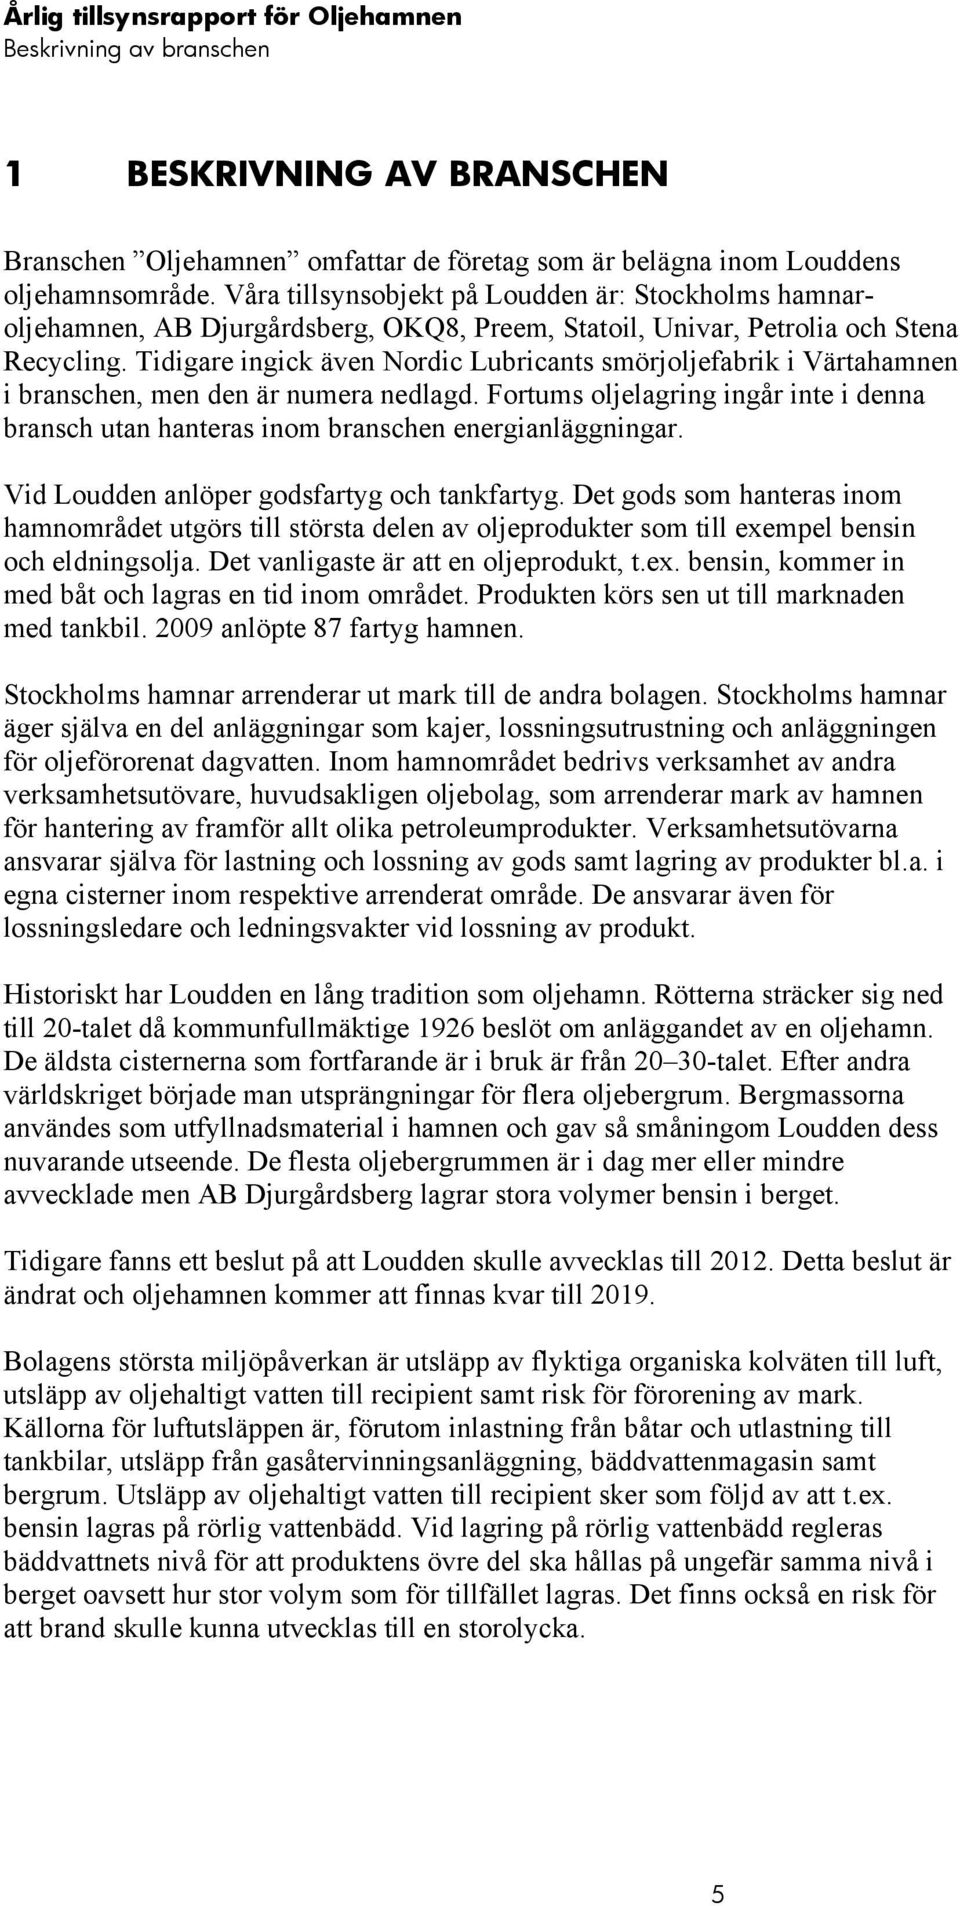 Tidigare ingick även Nordic Lubricants smörjoljefabrik i Värtahamnen i branschen, men den är numera nedlagd.